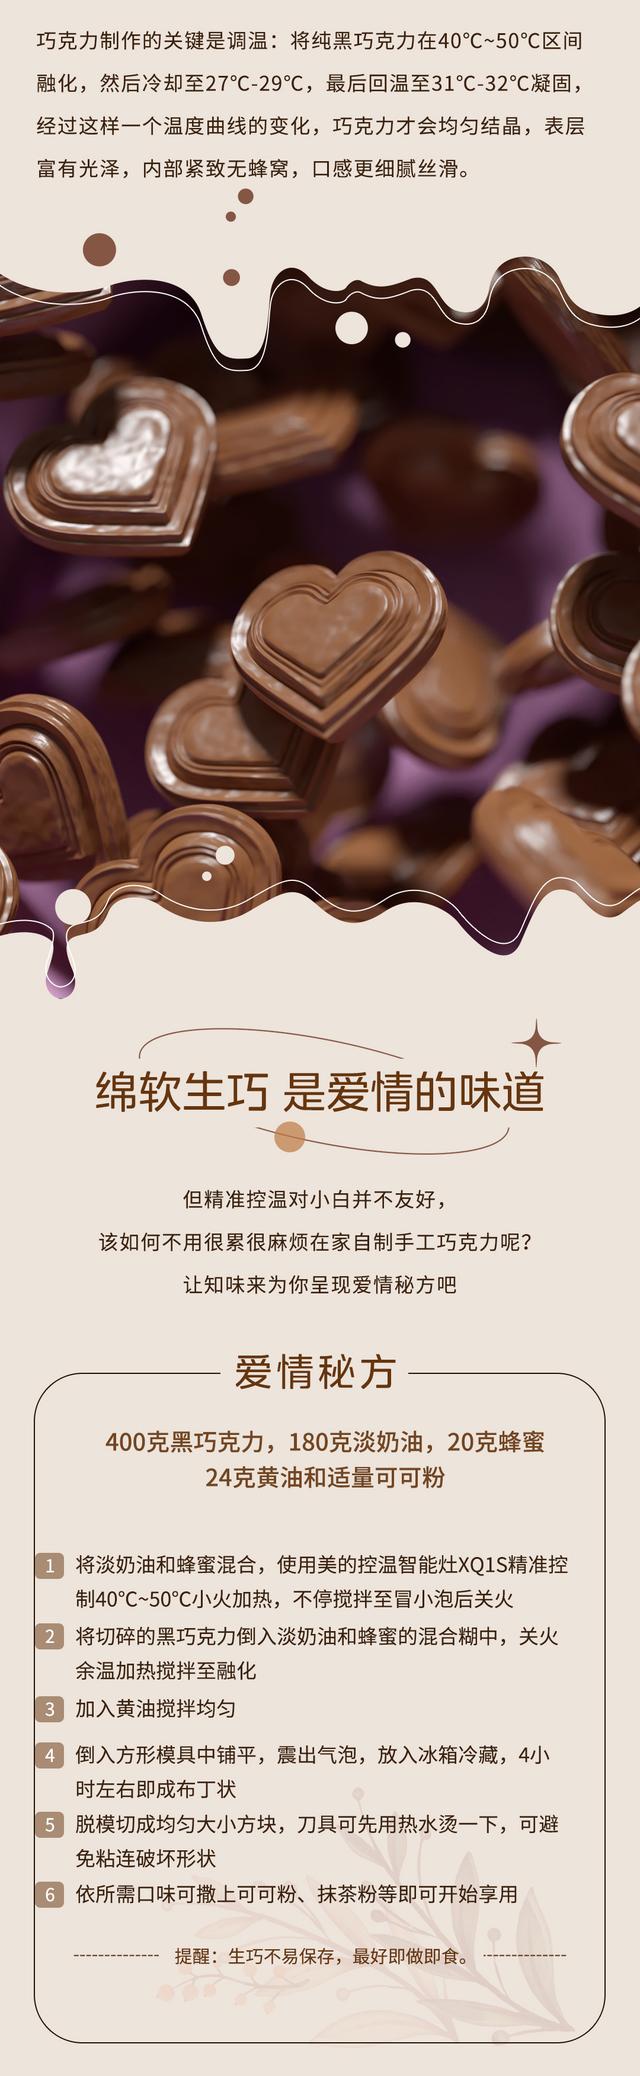 巧克力七夕文案，七夕巧克力文案标题（，当巧克力融于诗意50℃，美好就这样发生）